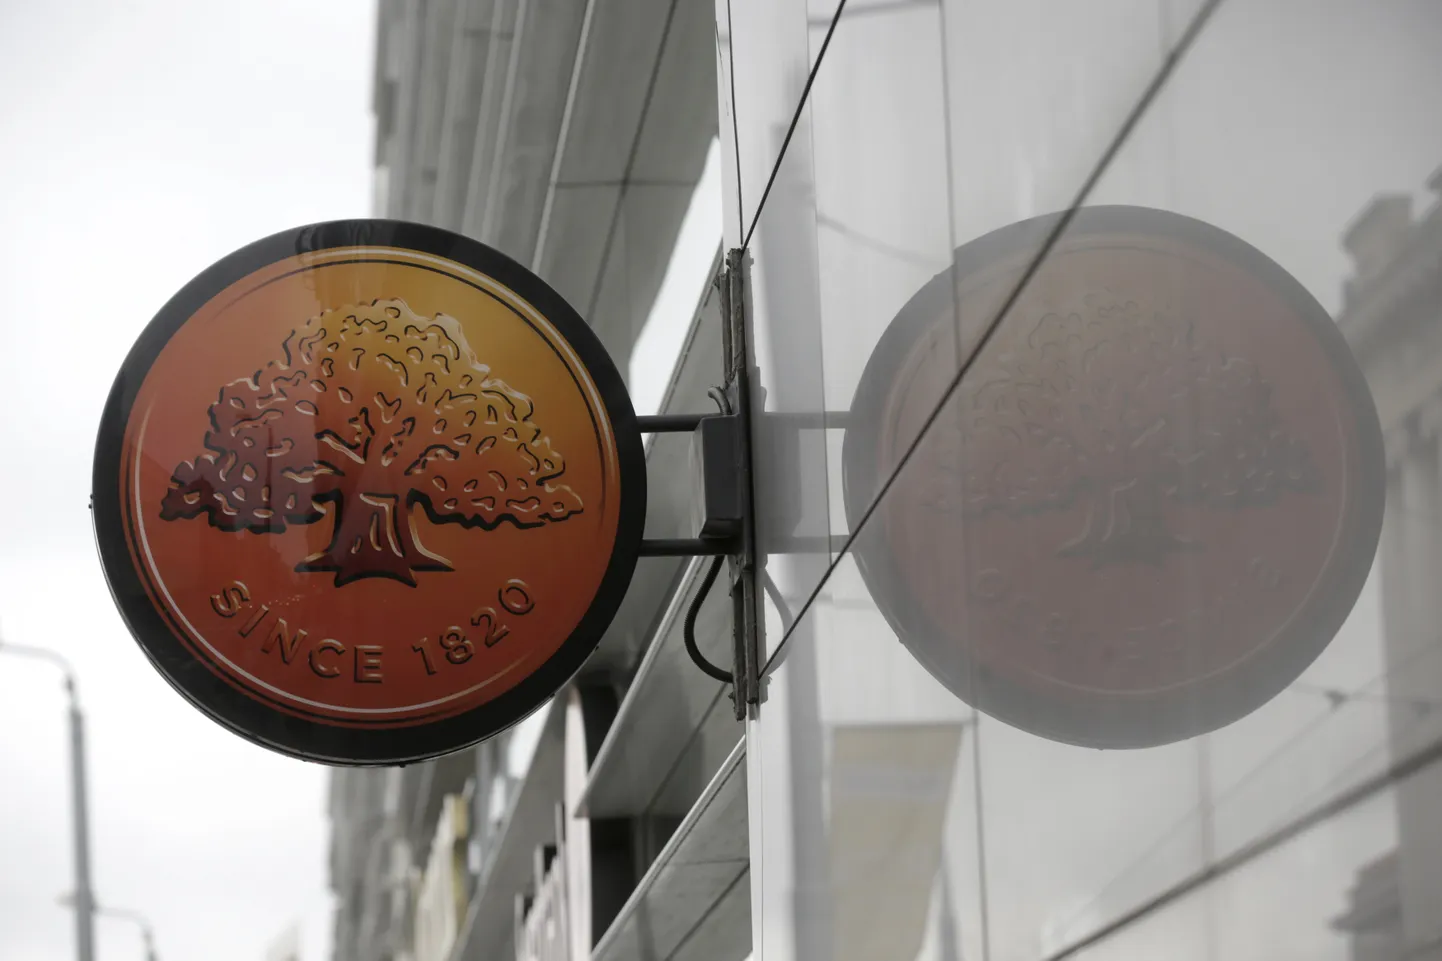 Swedbanki logo koos oma peegelpildiga Lätimaa pealinnas Riias 21. oktoobril 2021. Piiri taga põhjanaabri juures uuritakse parasjagu, kas Stockholmis baseeruv finantsinstitutsioon on osalenud rahapesus ja tegelenud ka teiste kriminaalsete asjadega.